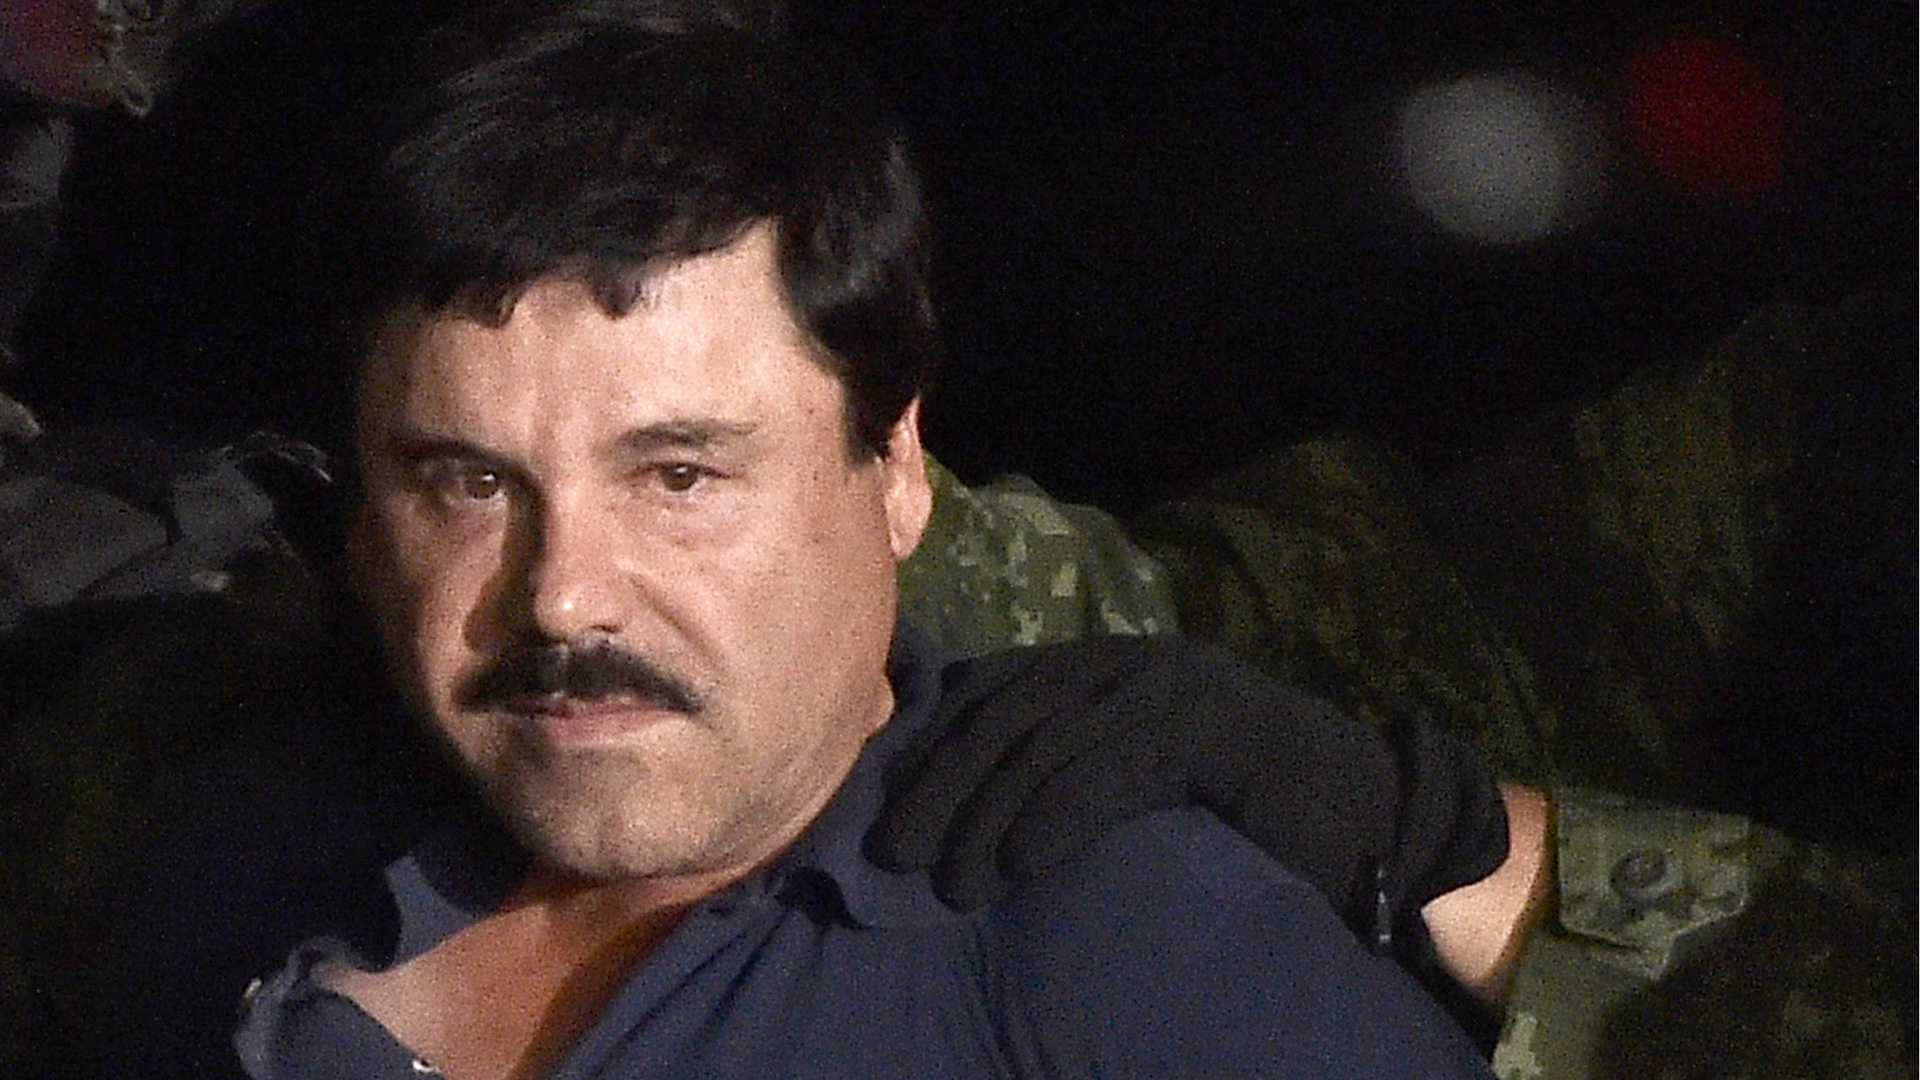 El gobierno de México extradita a EEUU al capo narco "El Chapo" Guzmán